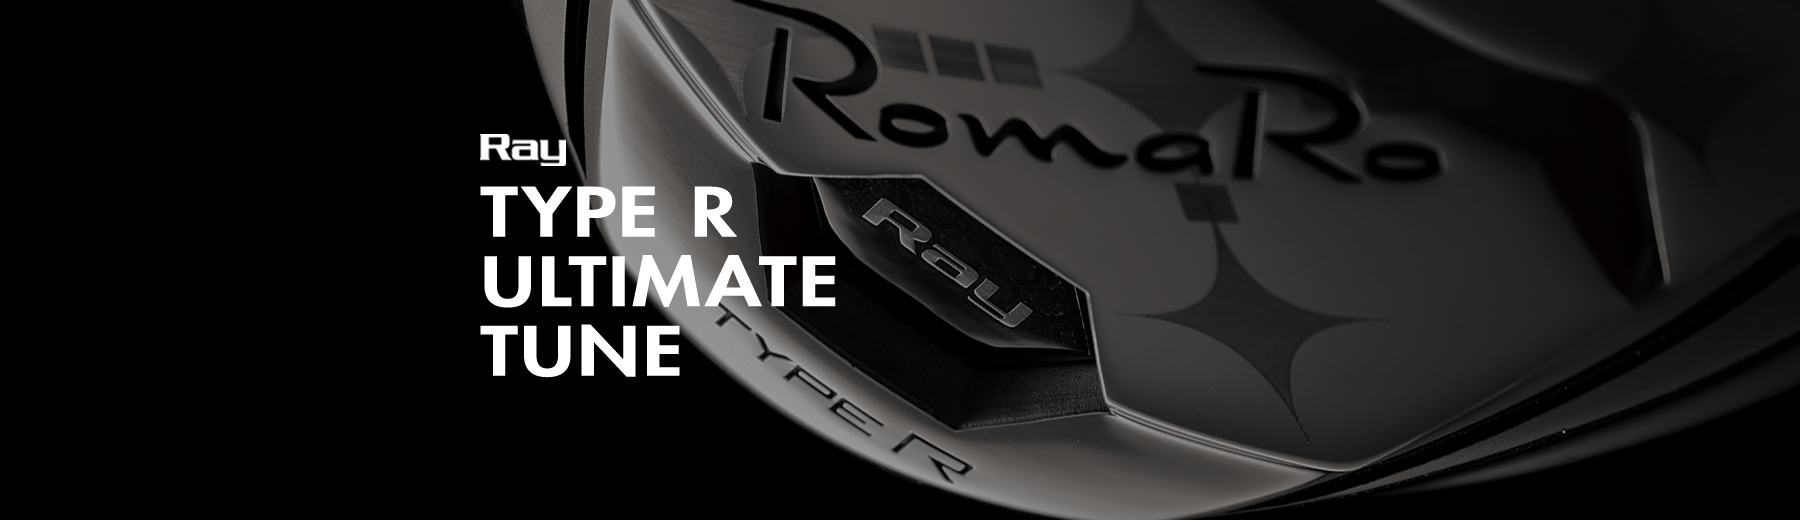 【決算特価★送料無料】 RomaRo (ロマロ) Ray Type R ドライバー ULTIMATE TUNE RODDIO TTシャフト:超